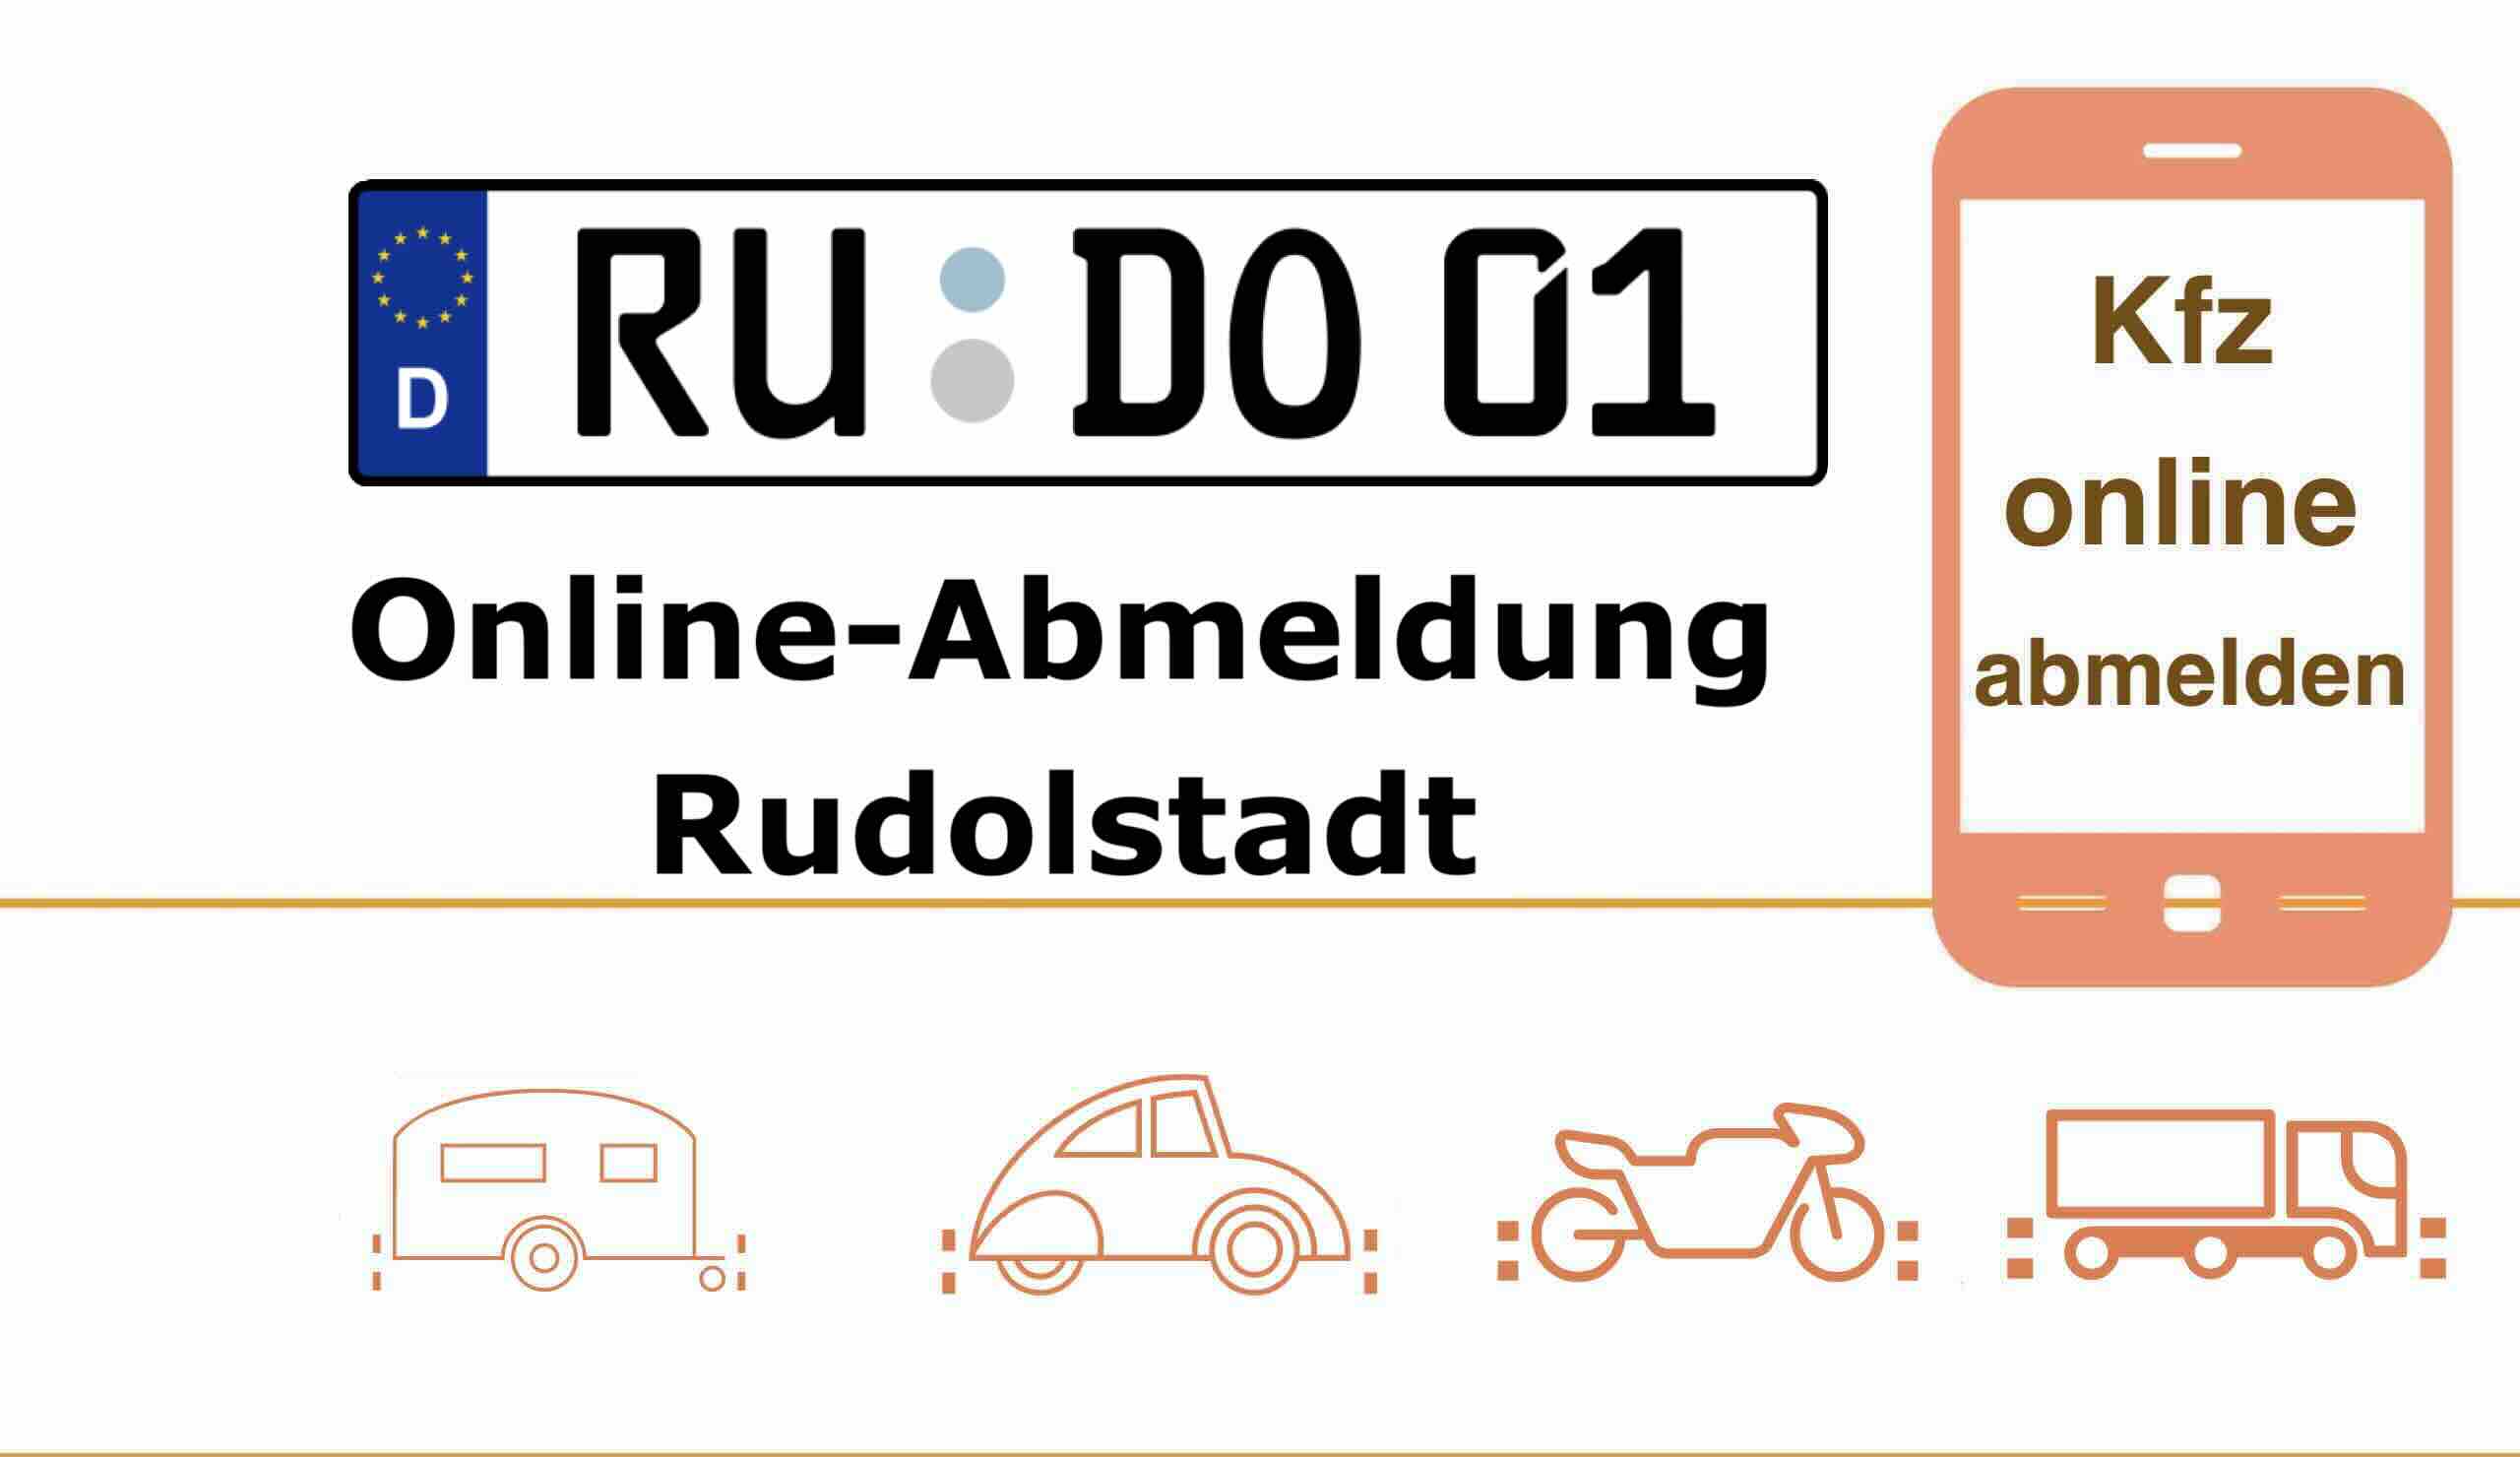 i-Kfz Online-Abmeldung in Rudolstadt für Autos Anhänger und Motorräder